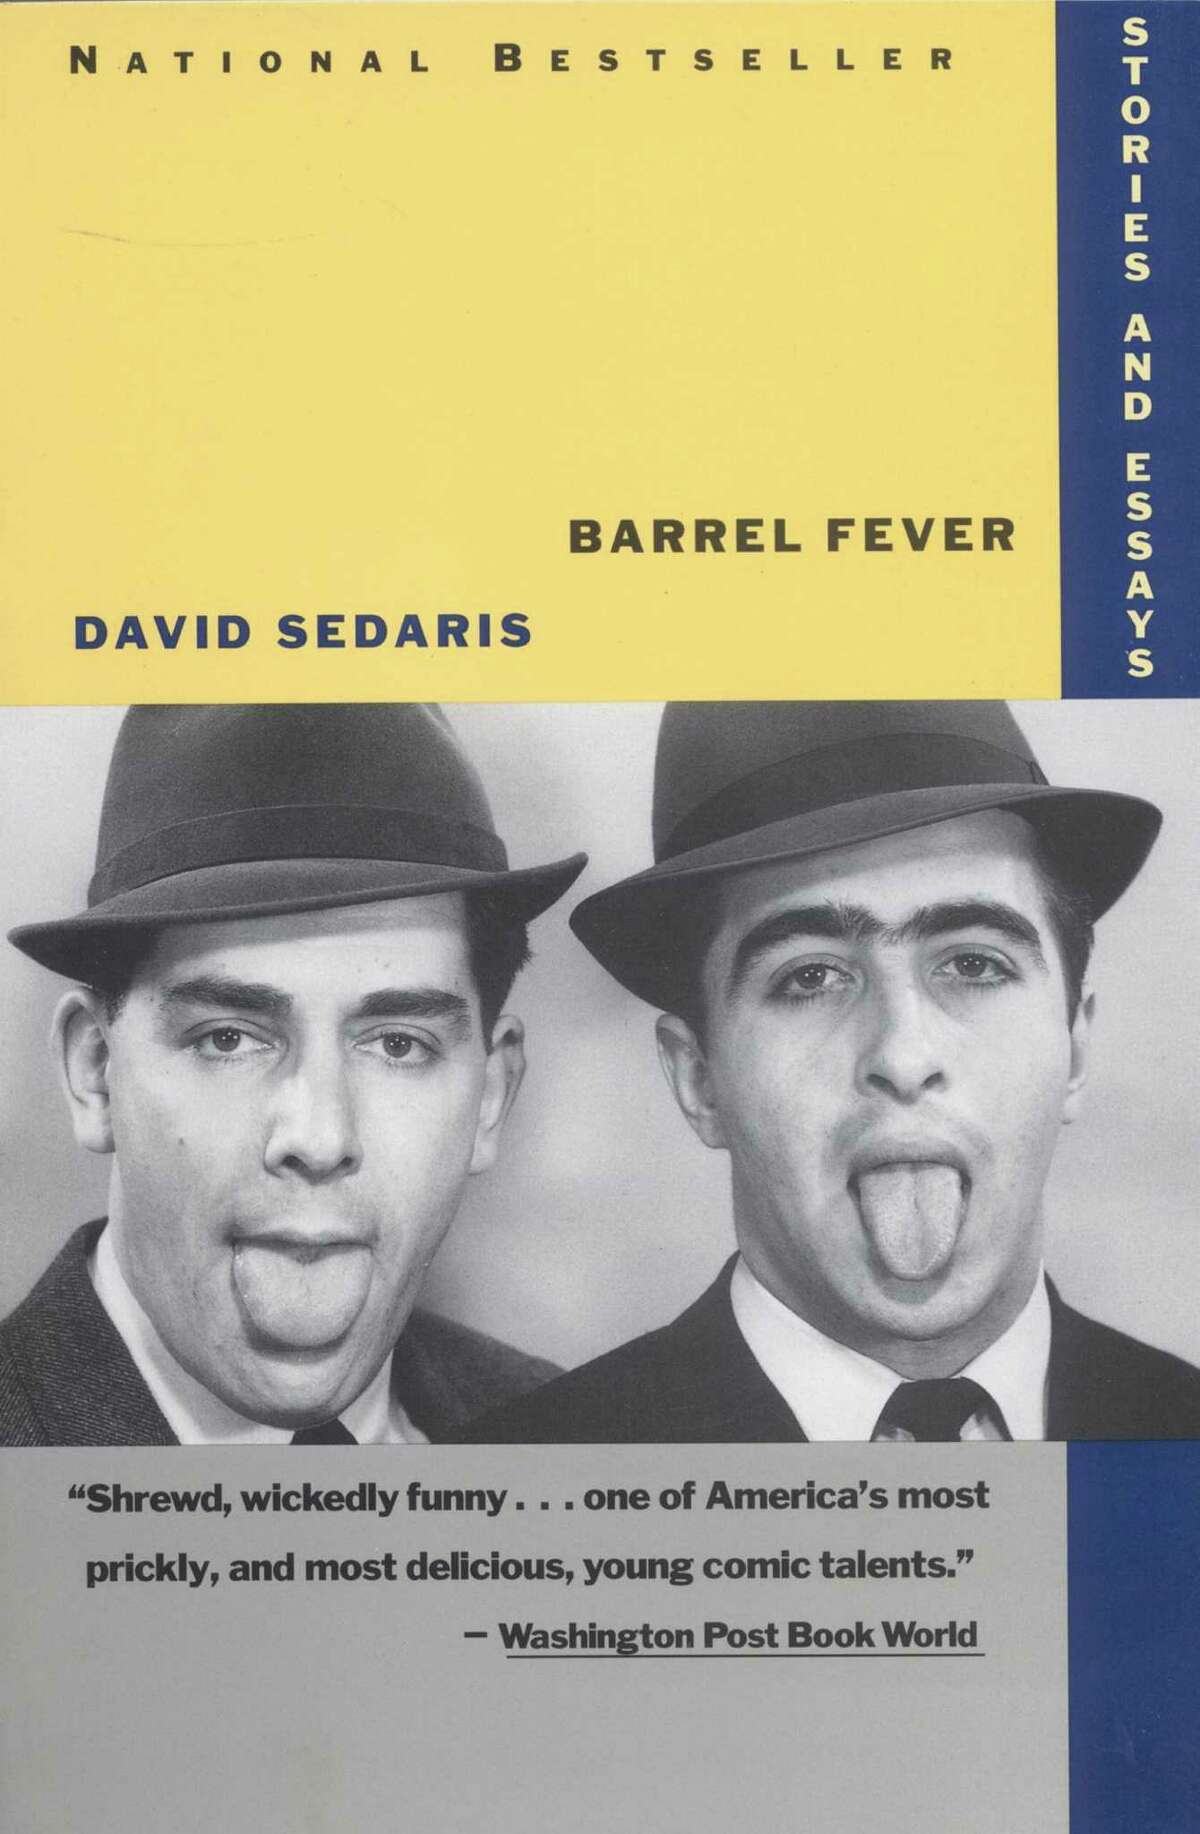 David Sedaris' "Barrel Fever"